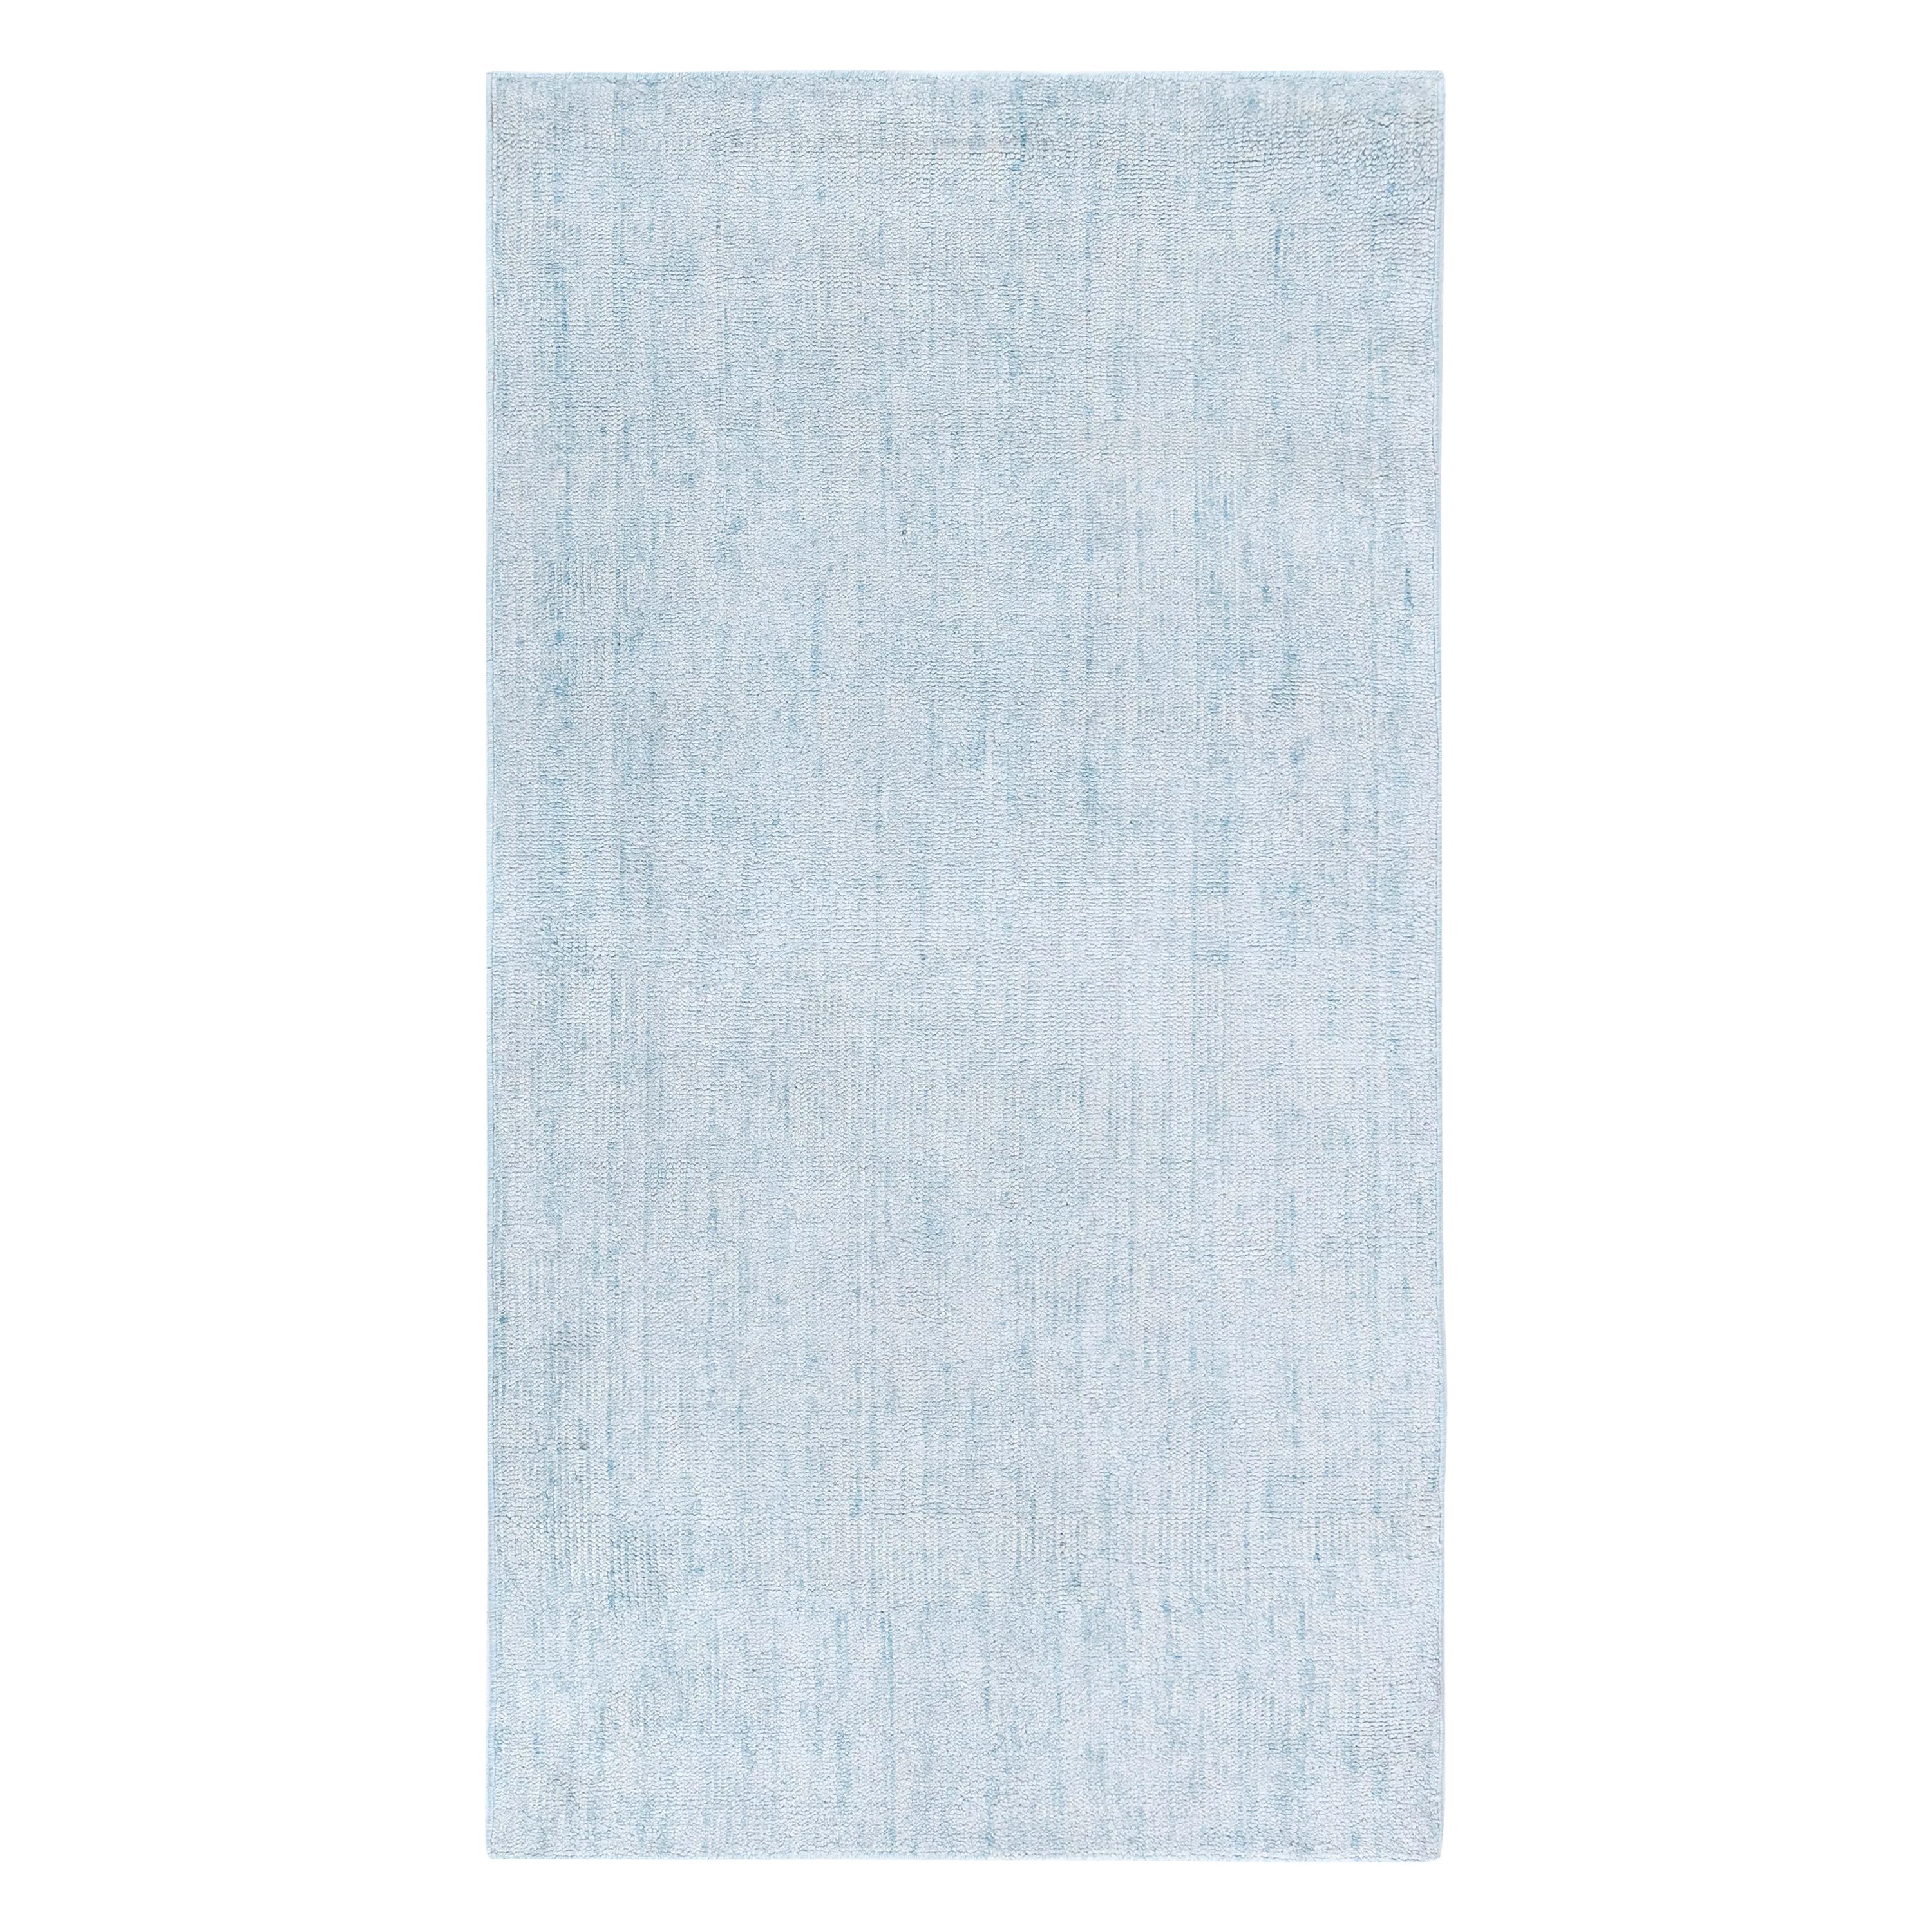 Contemporary Aqua-blue Wool Rug by Doris Leslie Blau